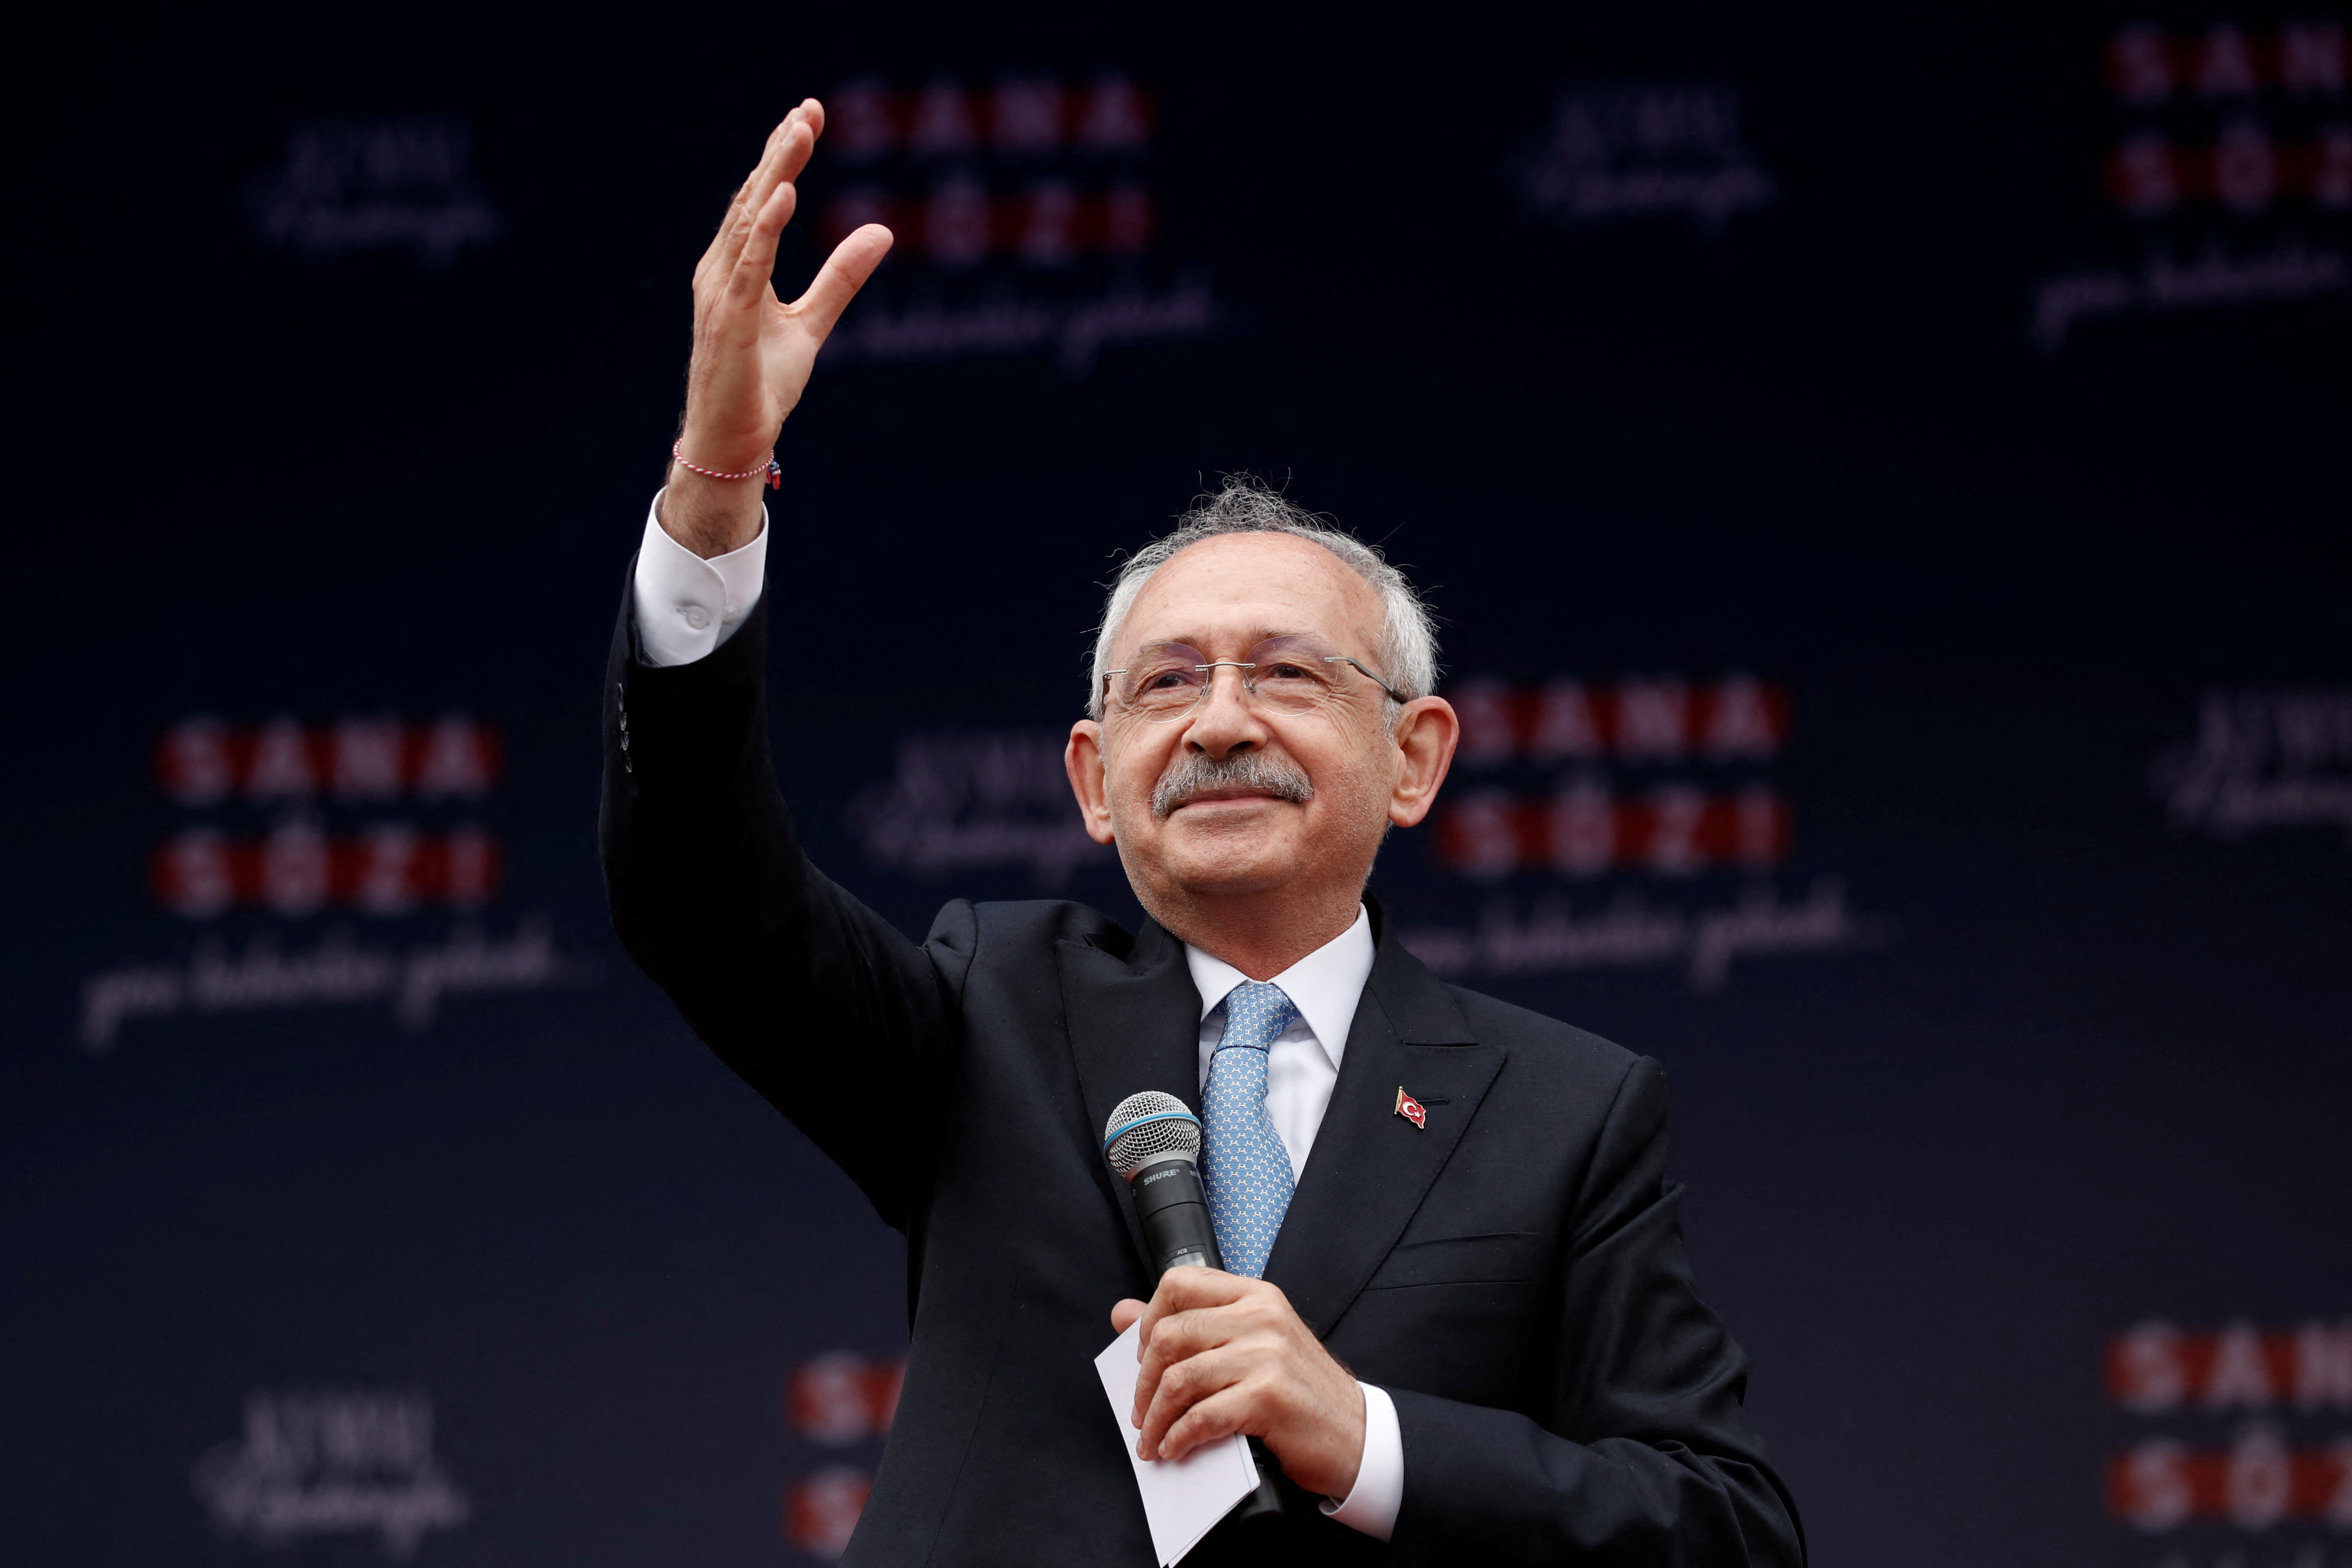 तुर्की के मुख्य विपक्षी गठबंधन के राष्ट्रपति पद के उम्मीदवार किलिकडारोग्लू टेकिरडाग में एक चुनावी रैली में हिस्सा लेते हुए